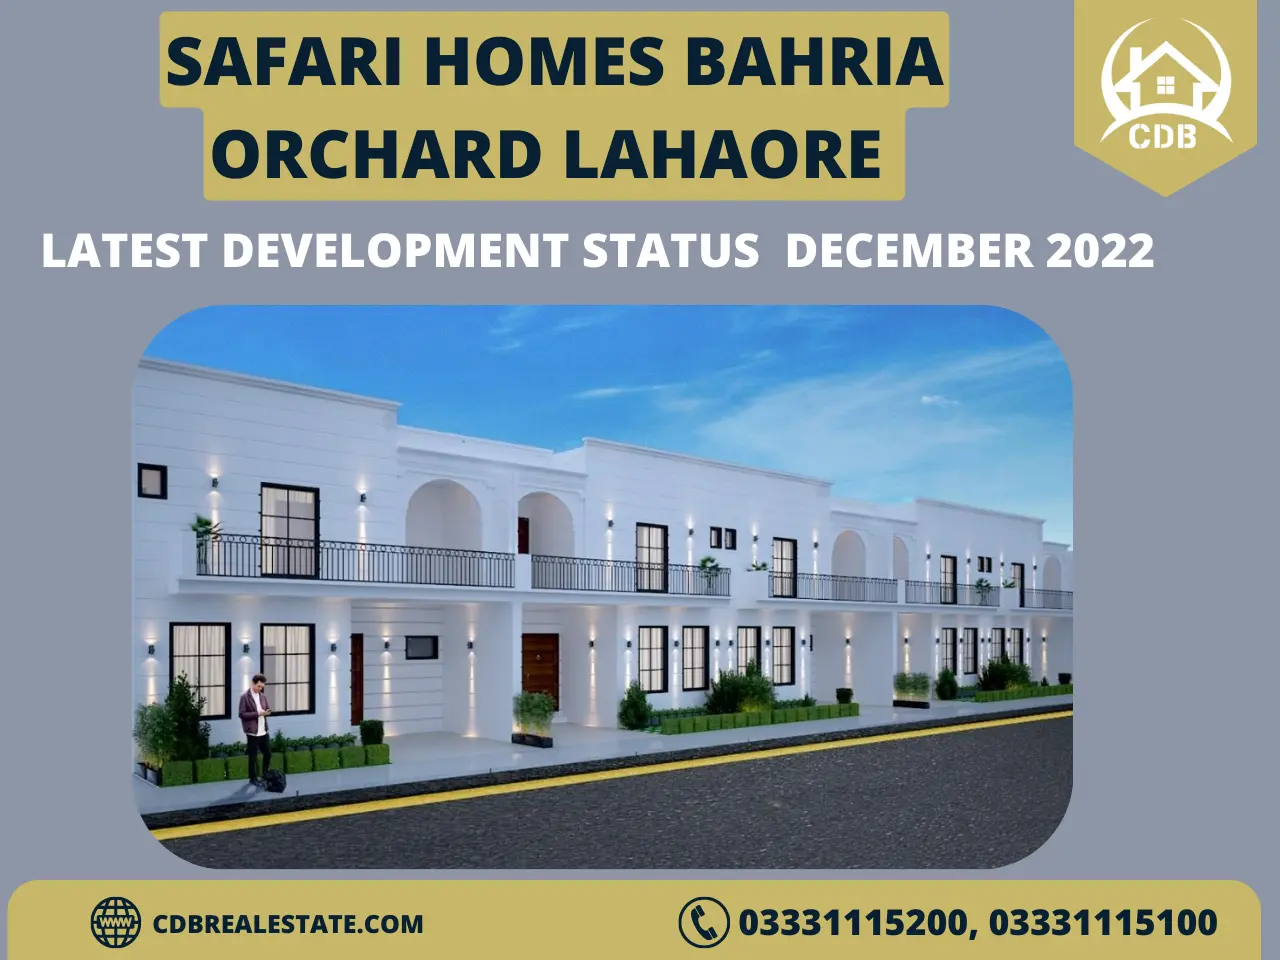 safari homes bahria orcahrd phase 4